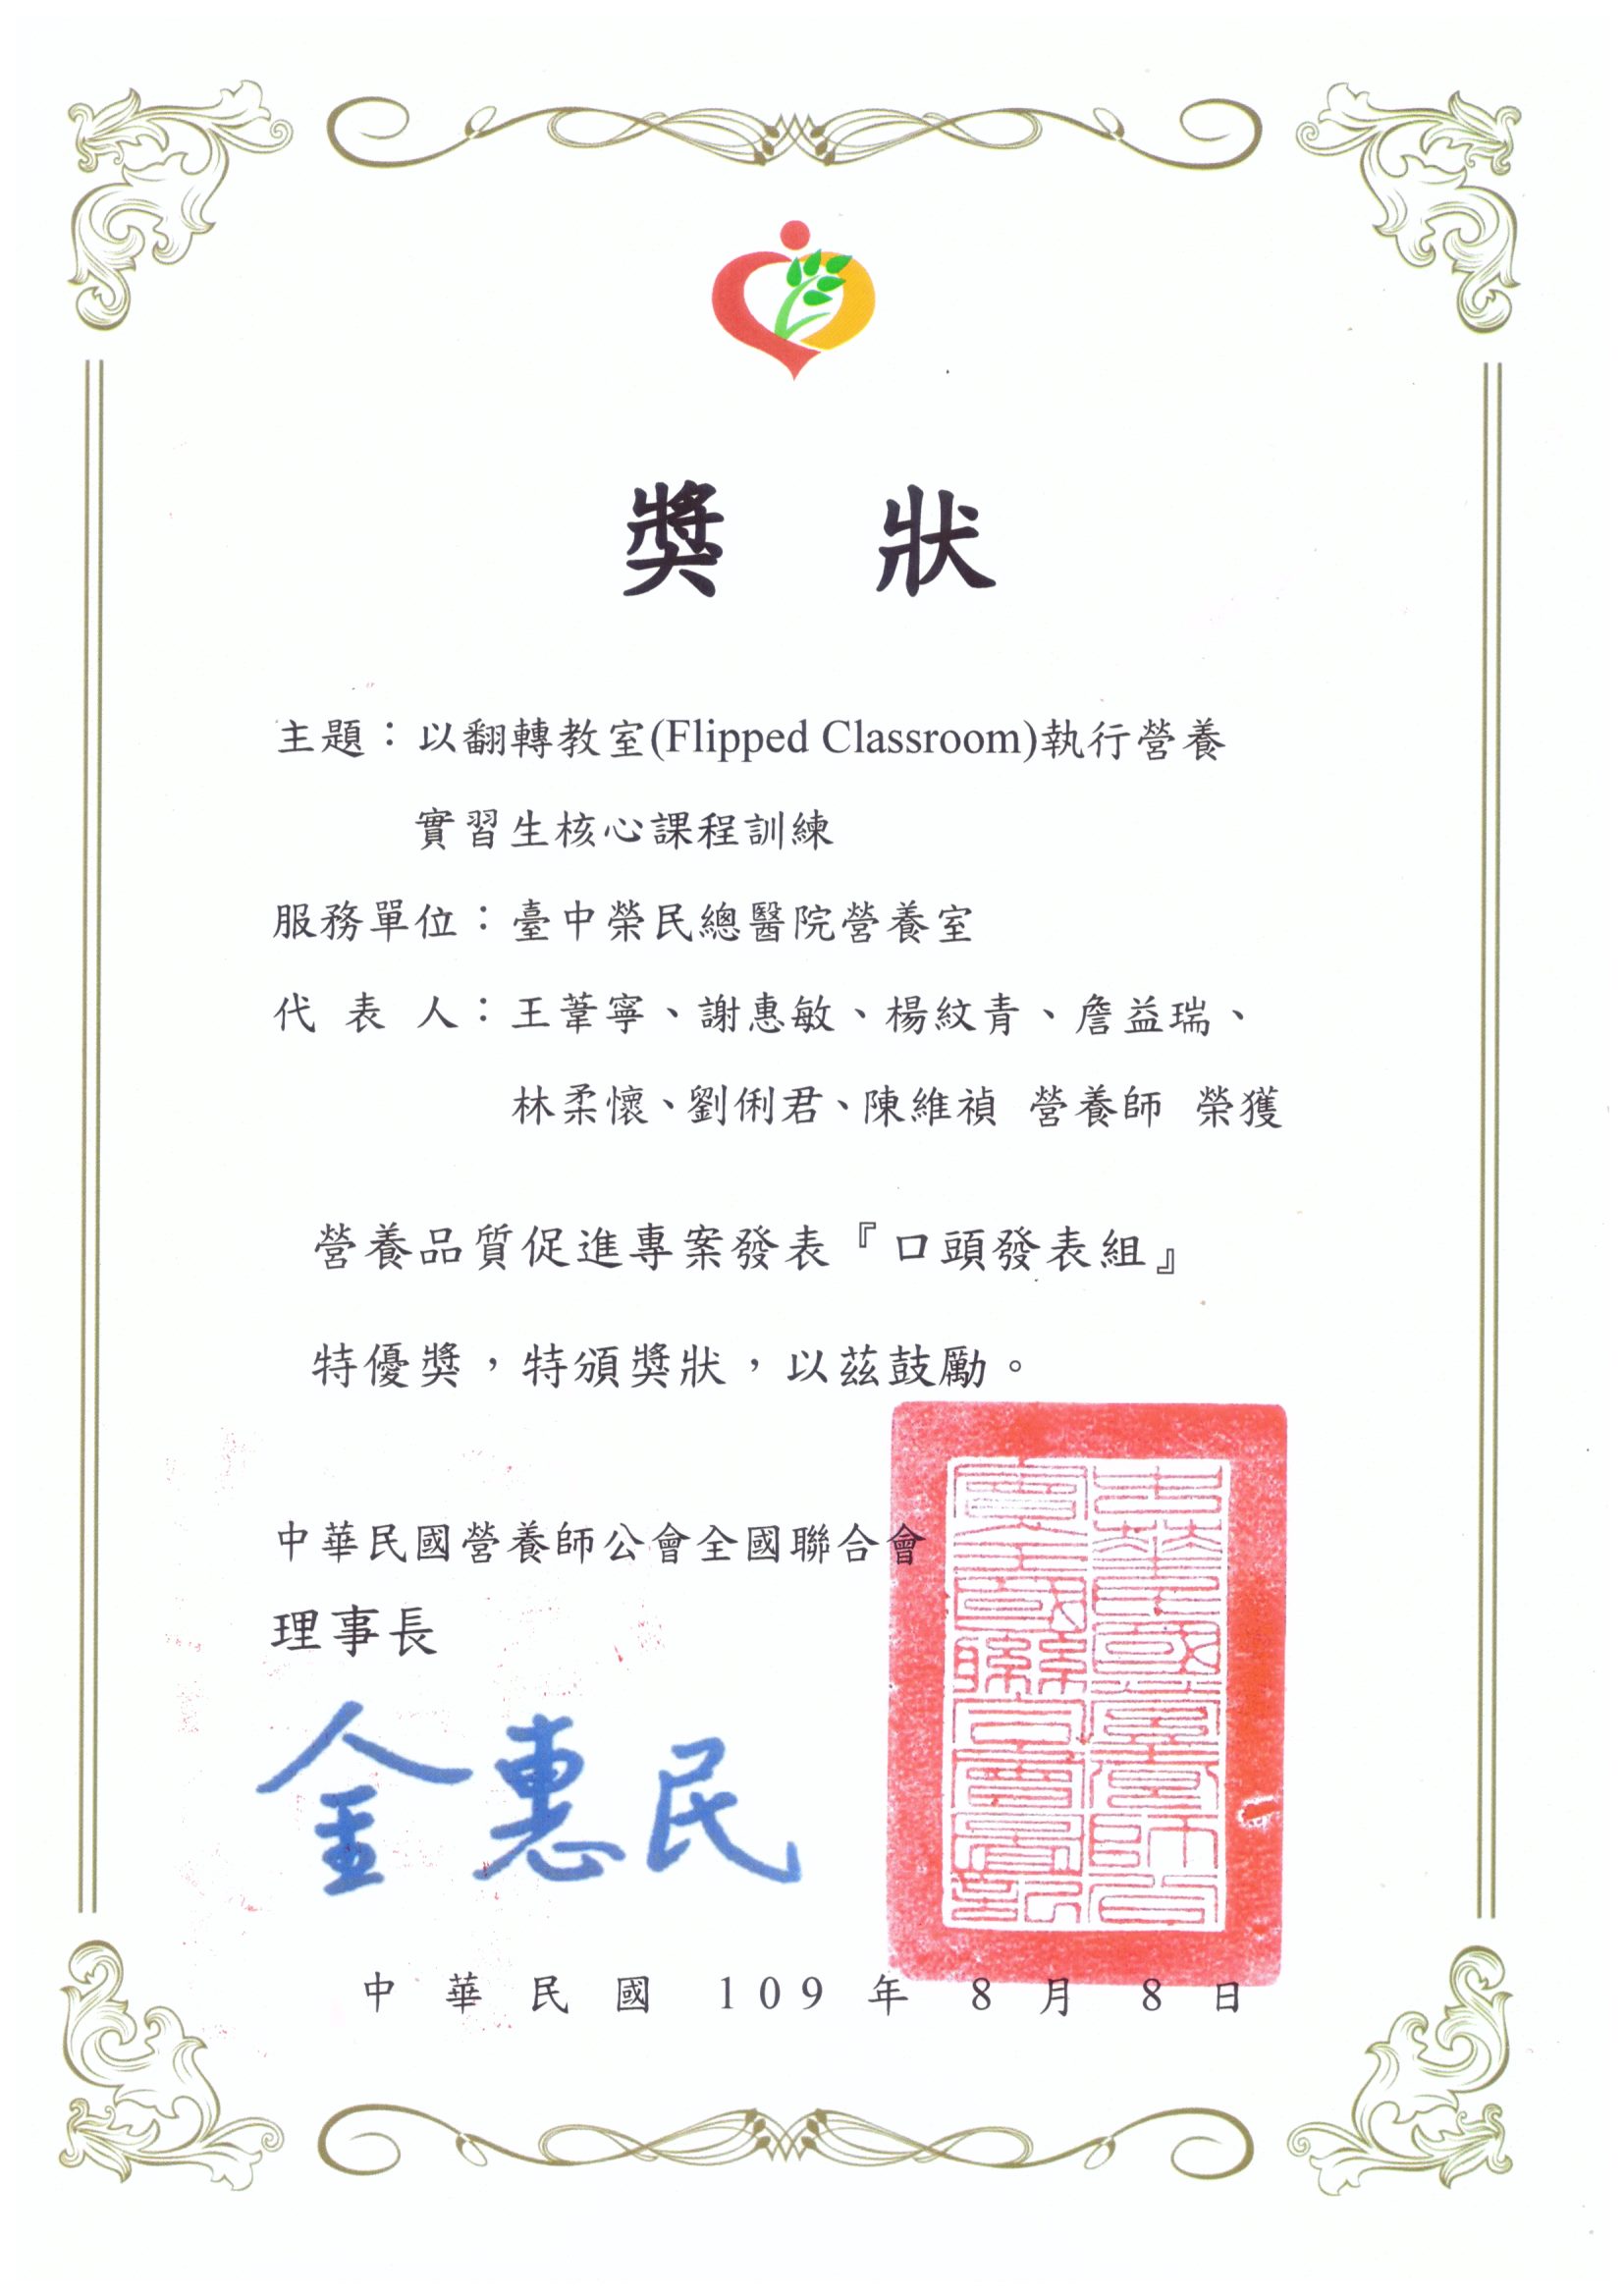 本院榮獲中華民國營養師公會全國聯合會頒發109年度營養品質促進專案發表口頭發表組特優獎。